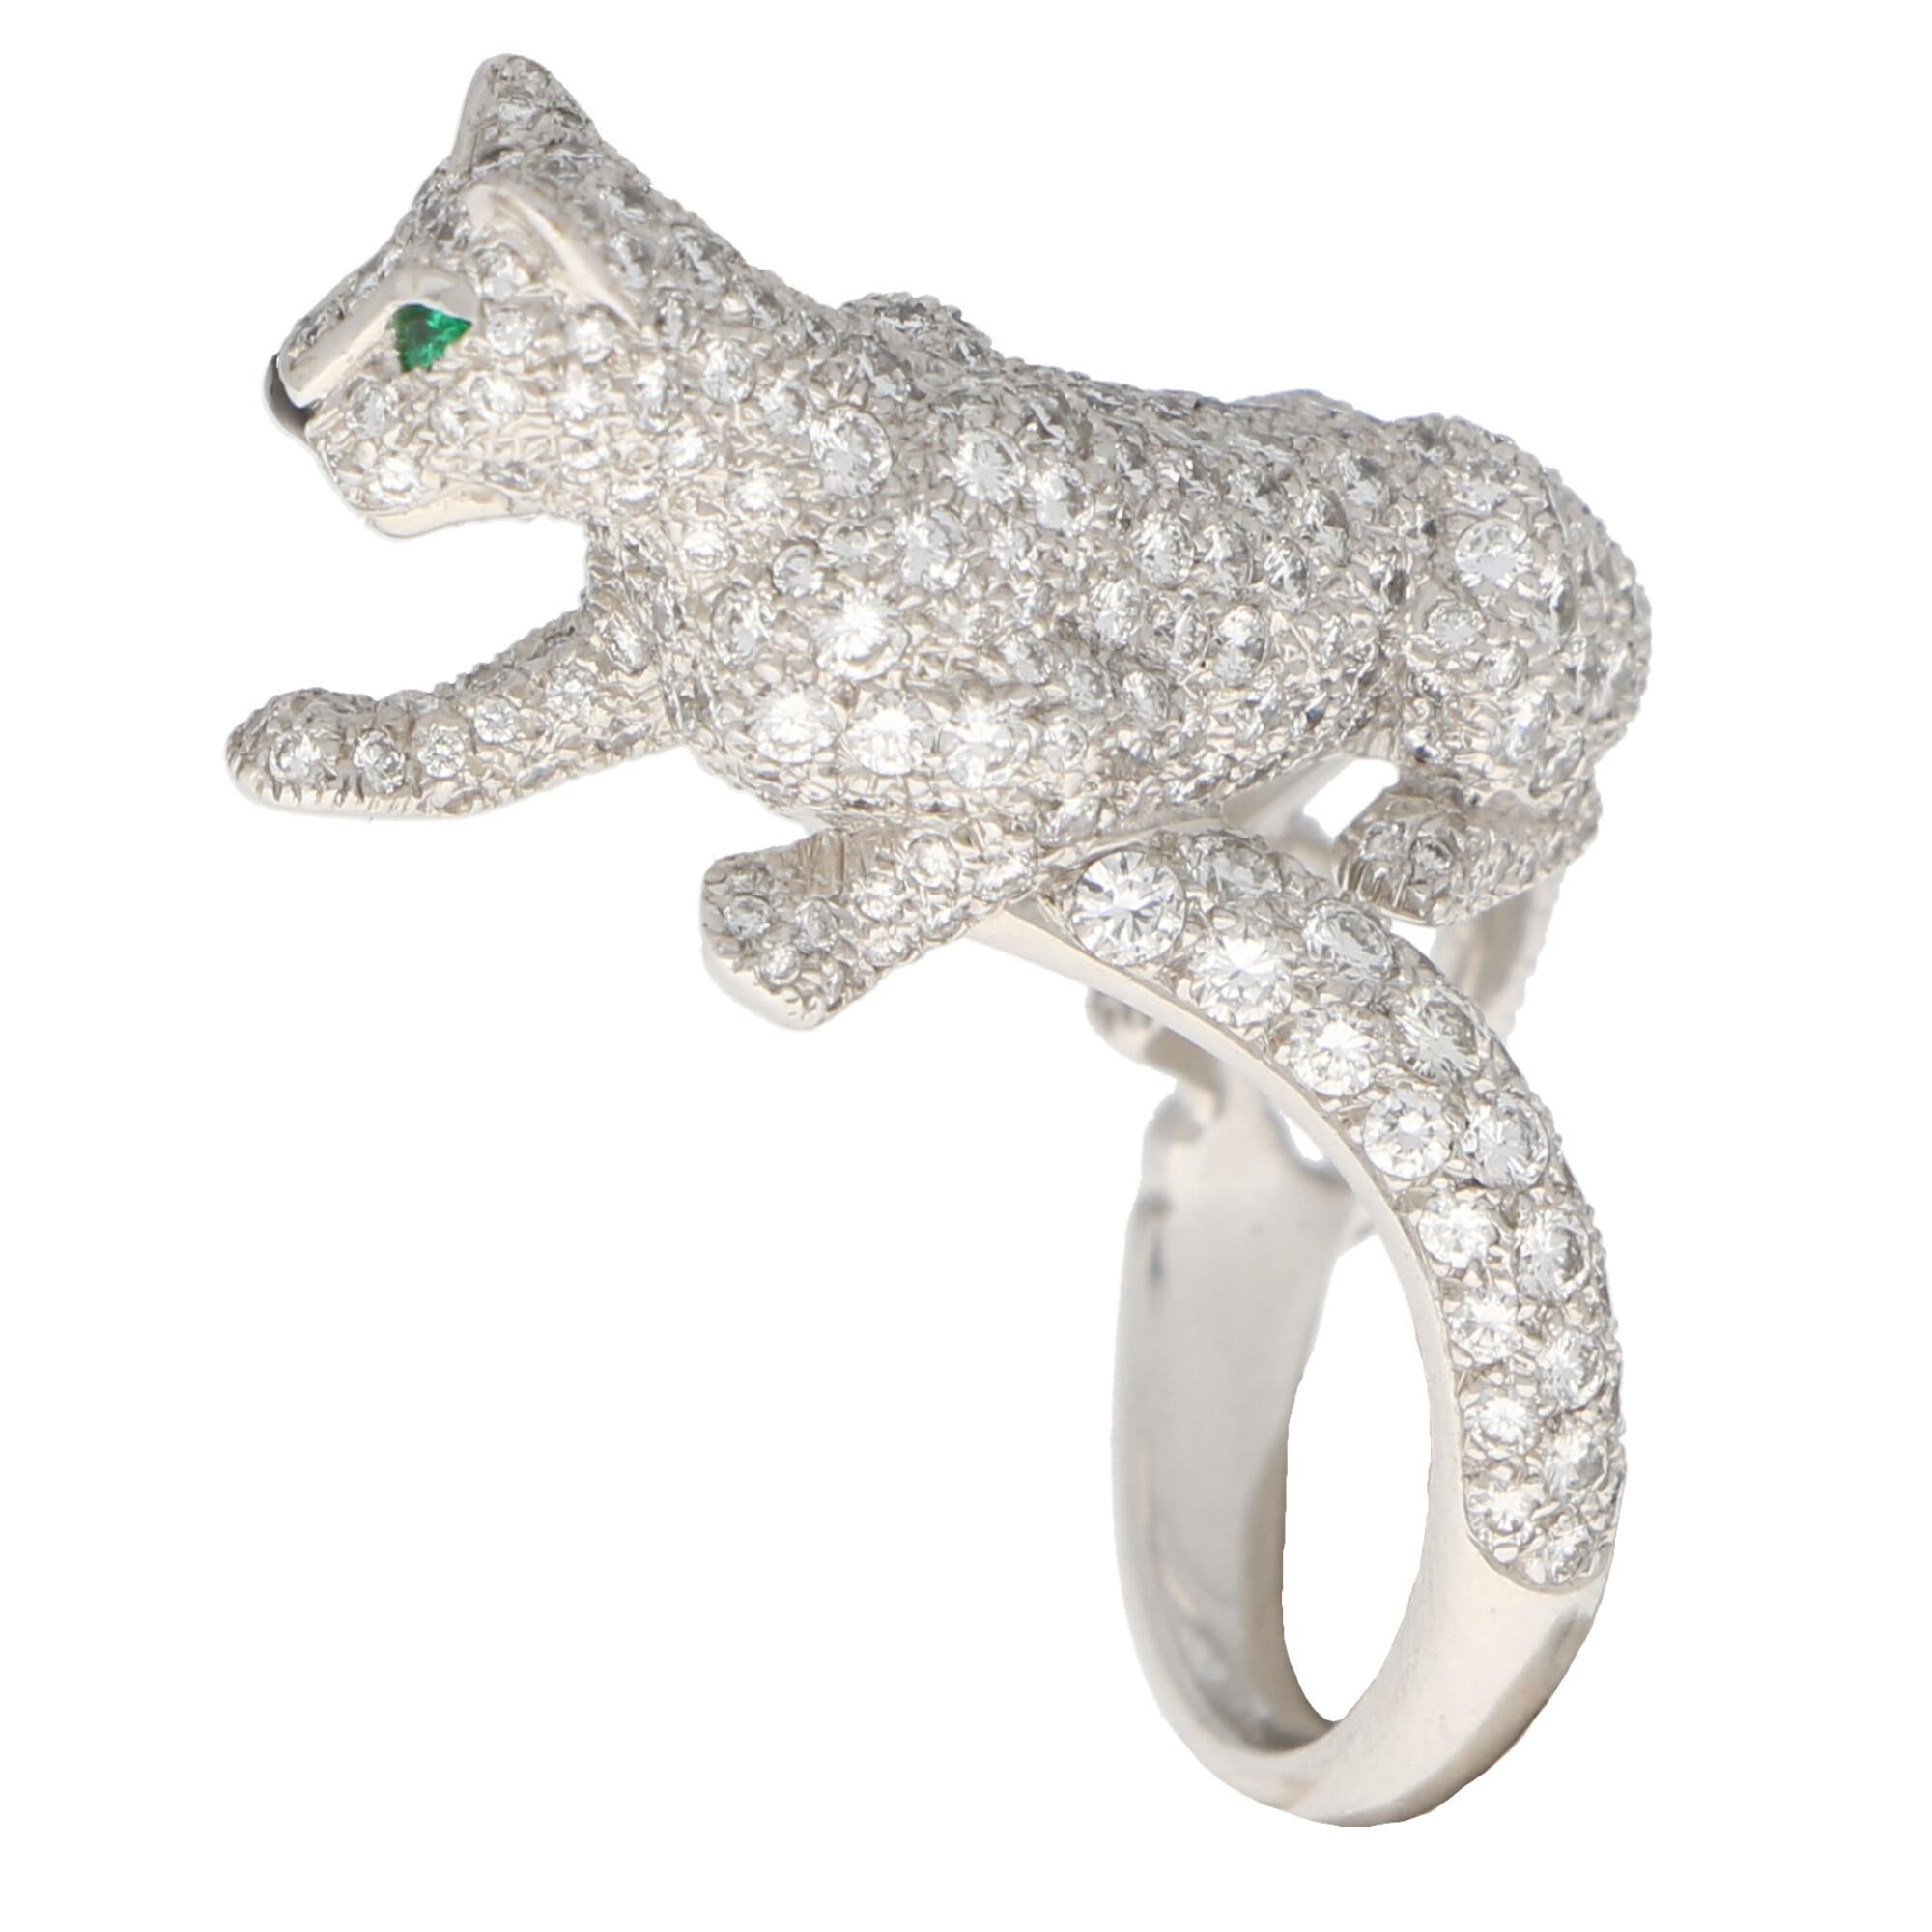 Round Cut Cartier Diamond and Green Garnet Walking Panther Ring Set in 18k White Gold